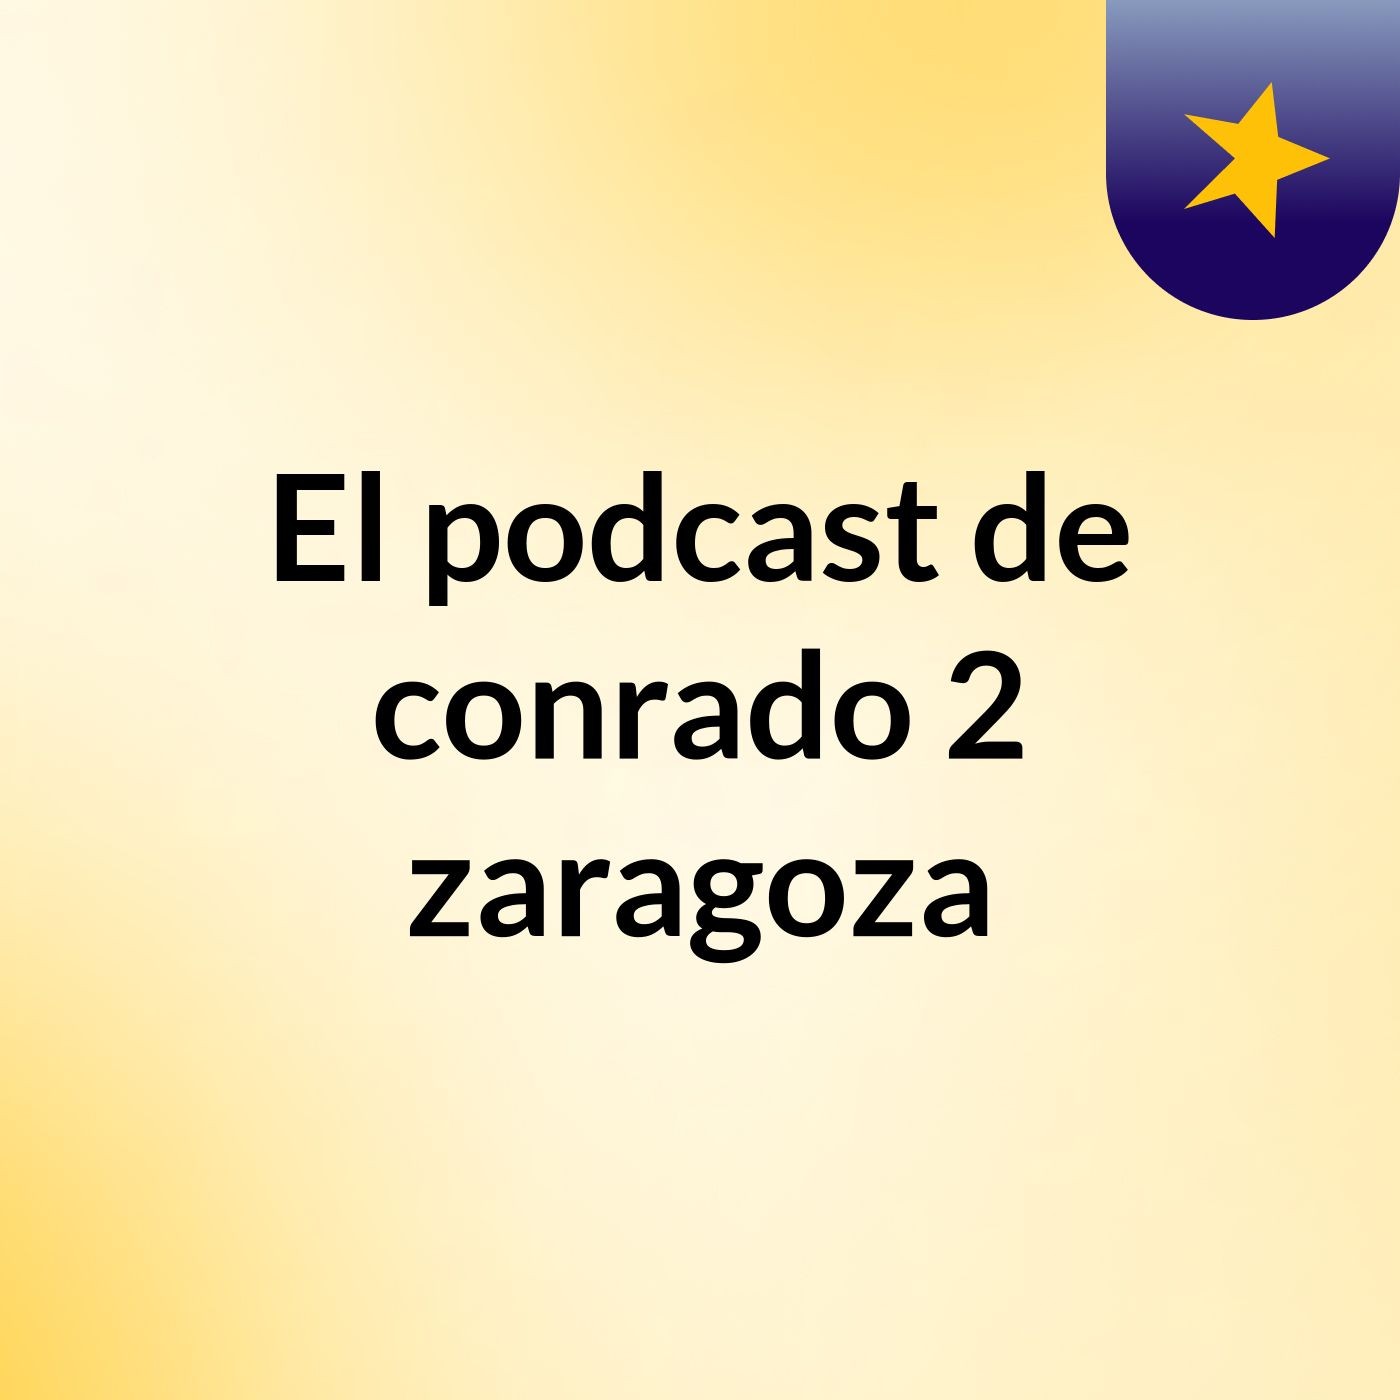 Episodio 31 - El podcast de conrado 2 zaragoza